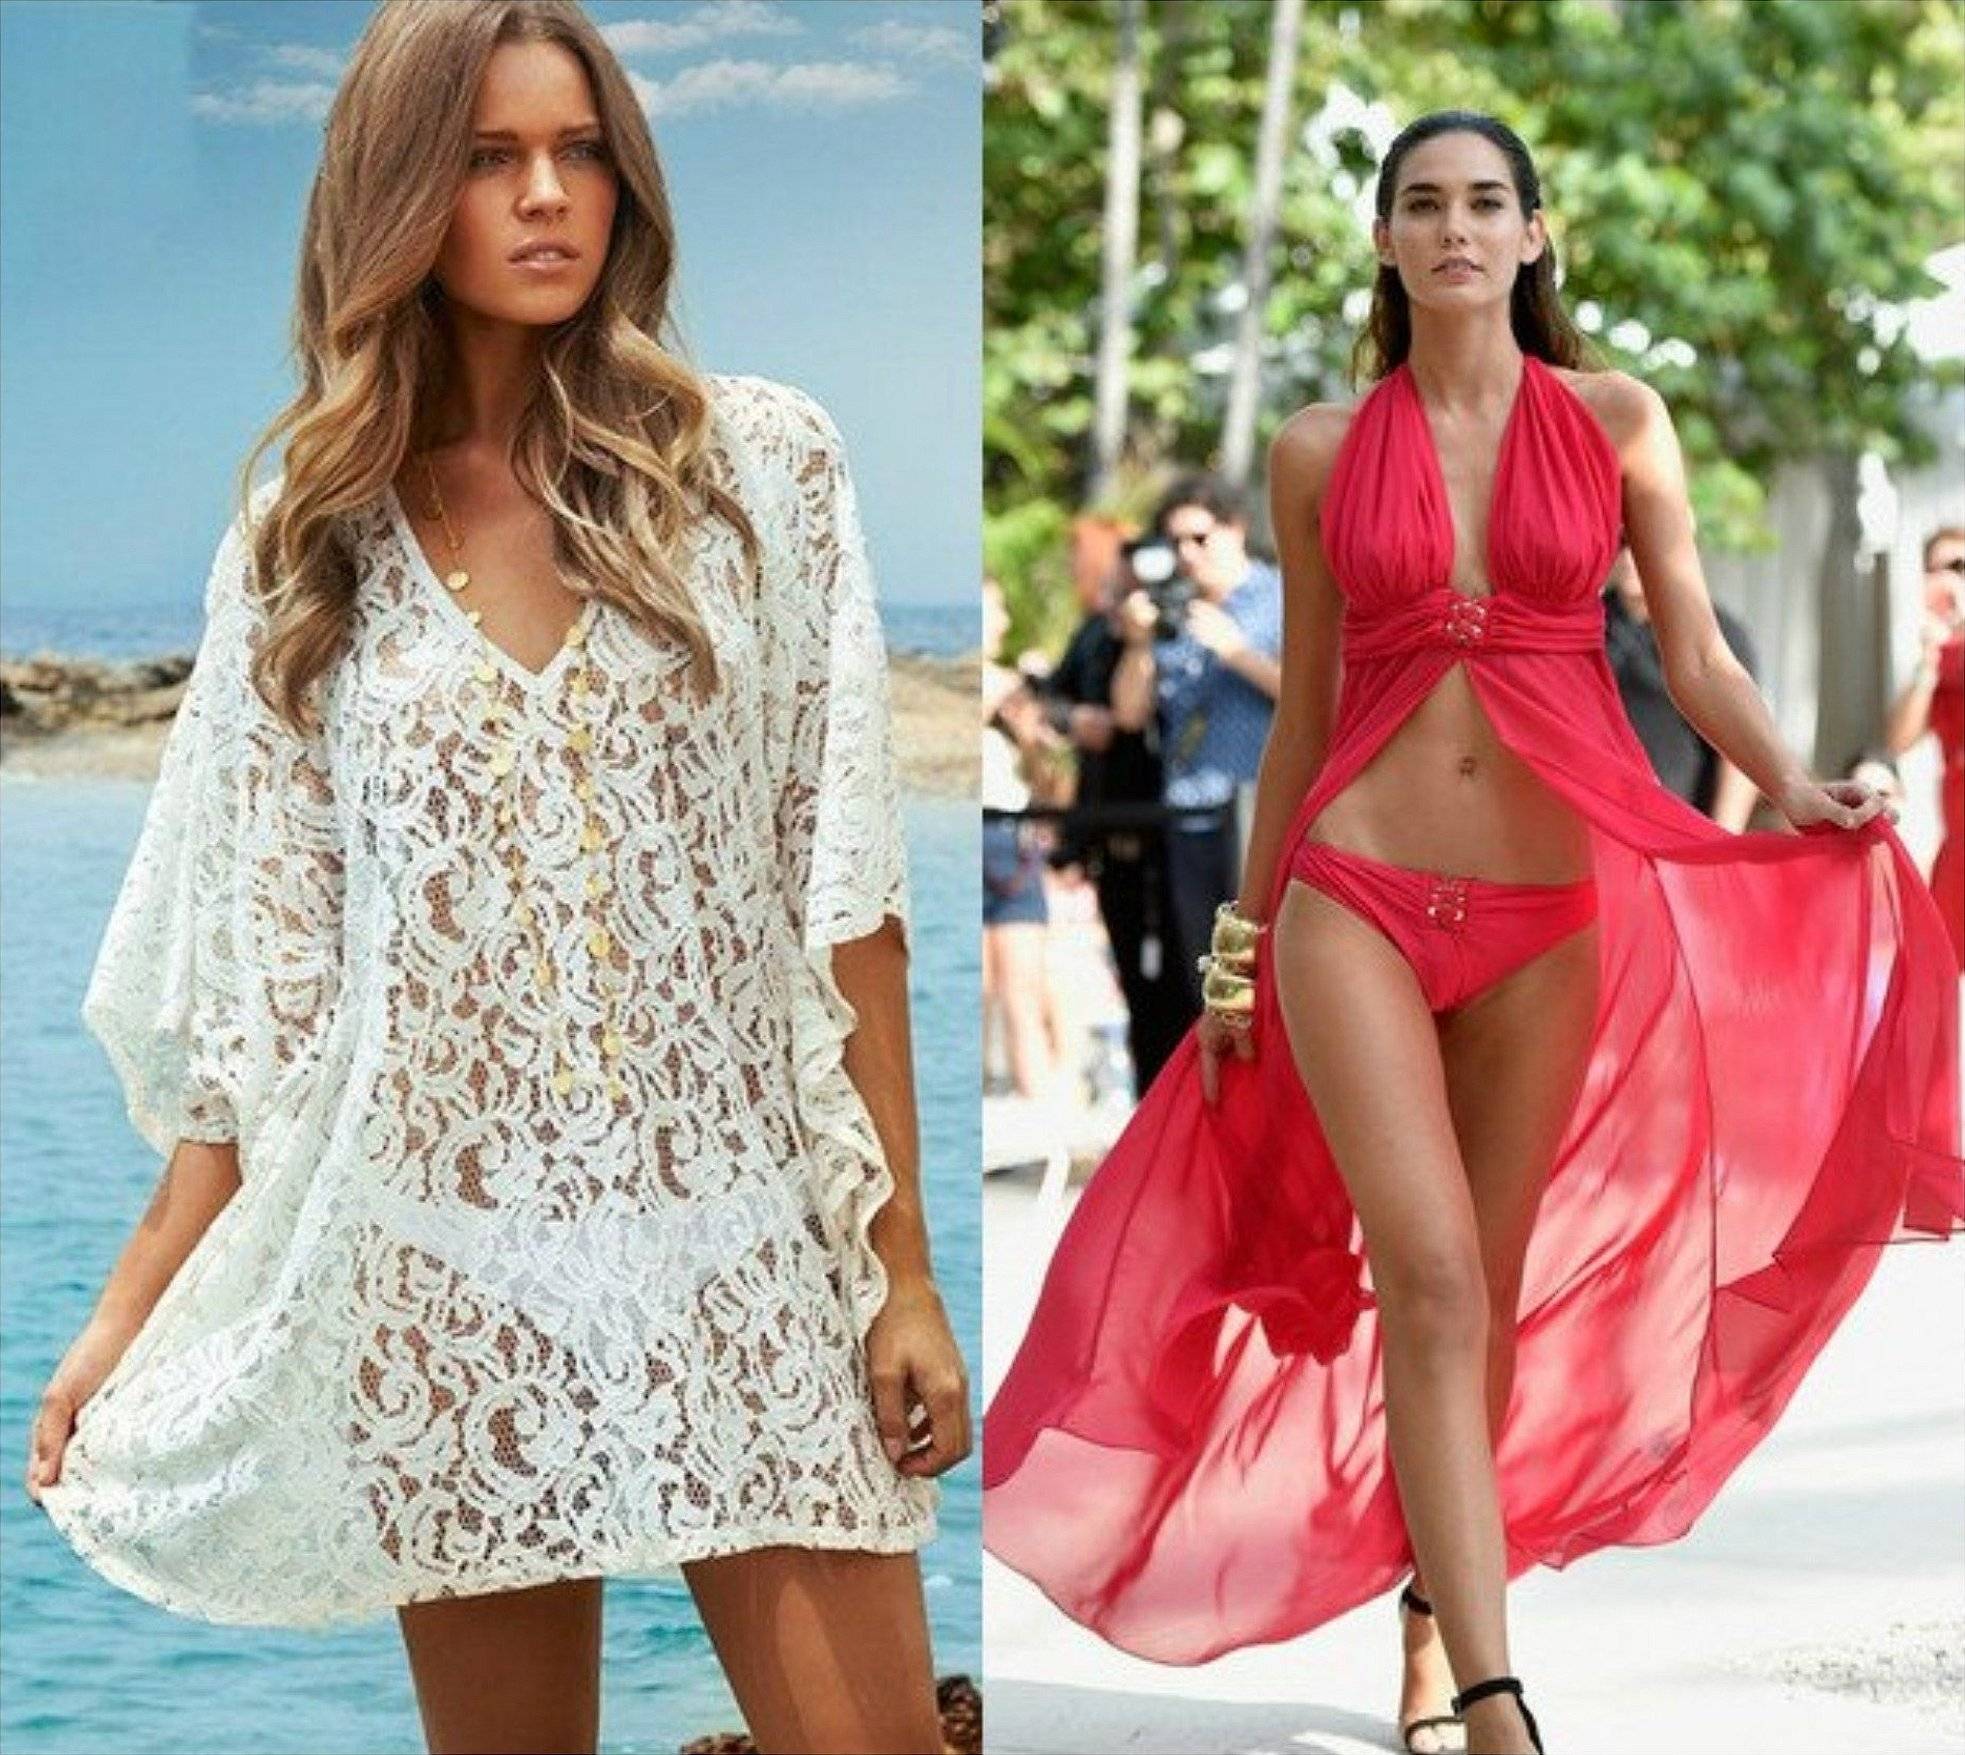 Парео для пляжа: какие модели советуют надевать стилисты этим летом?